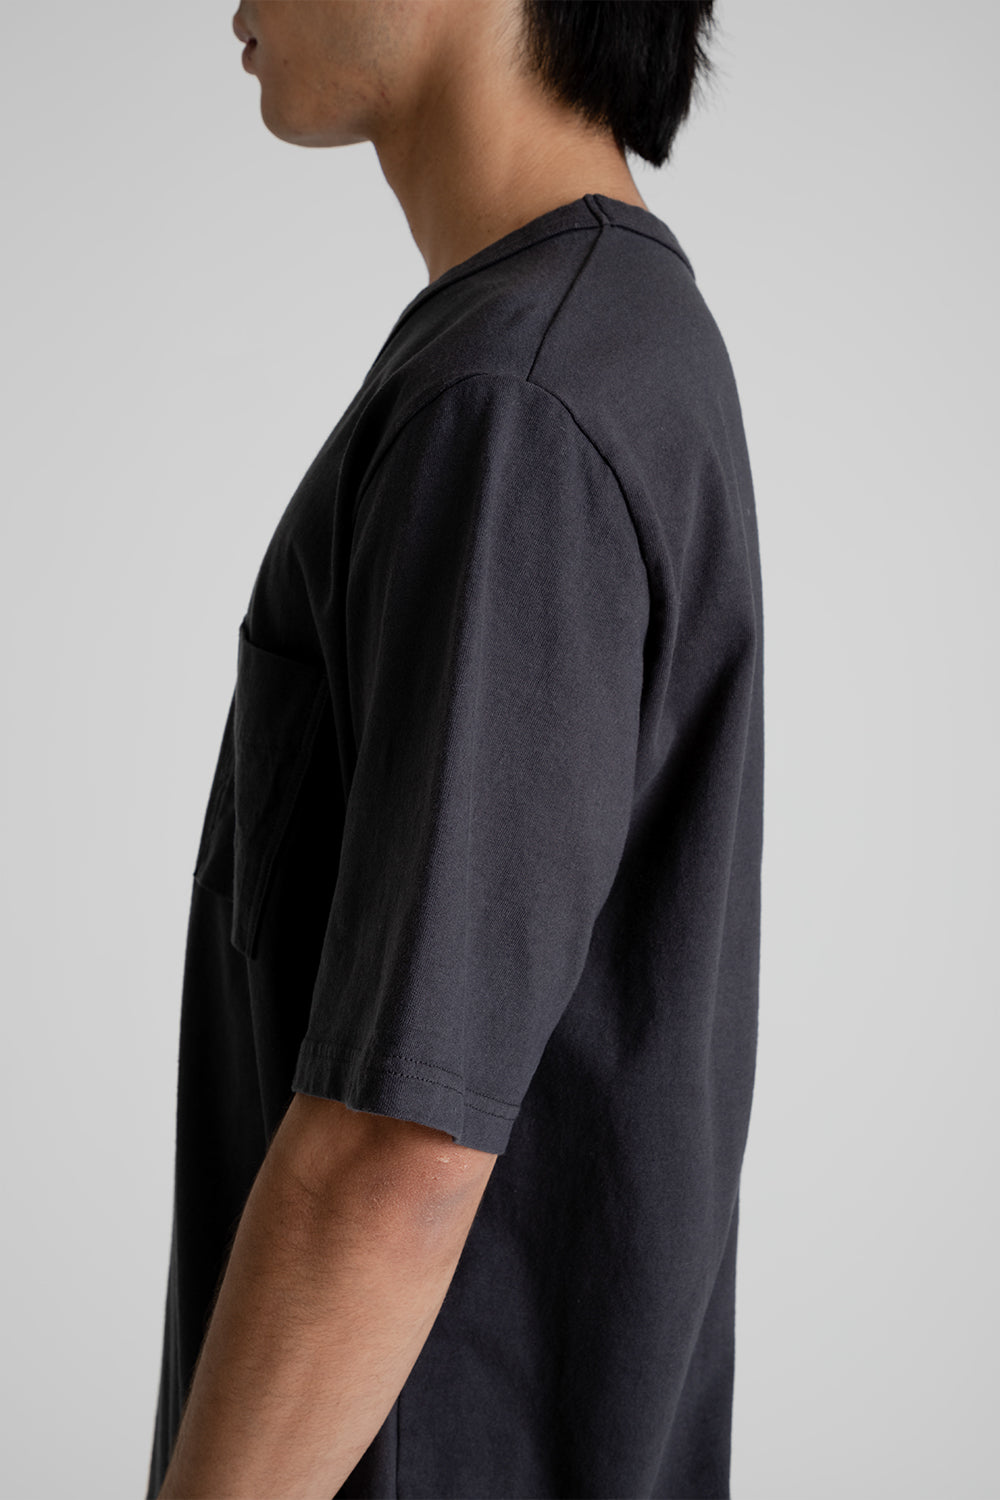 Jackman Pocket T-Shirt in Ink Black